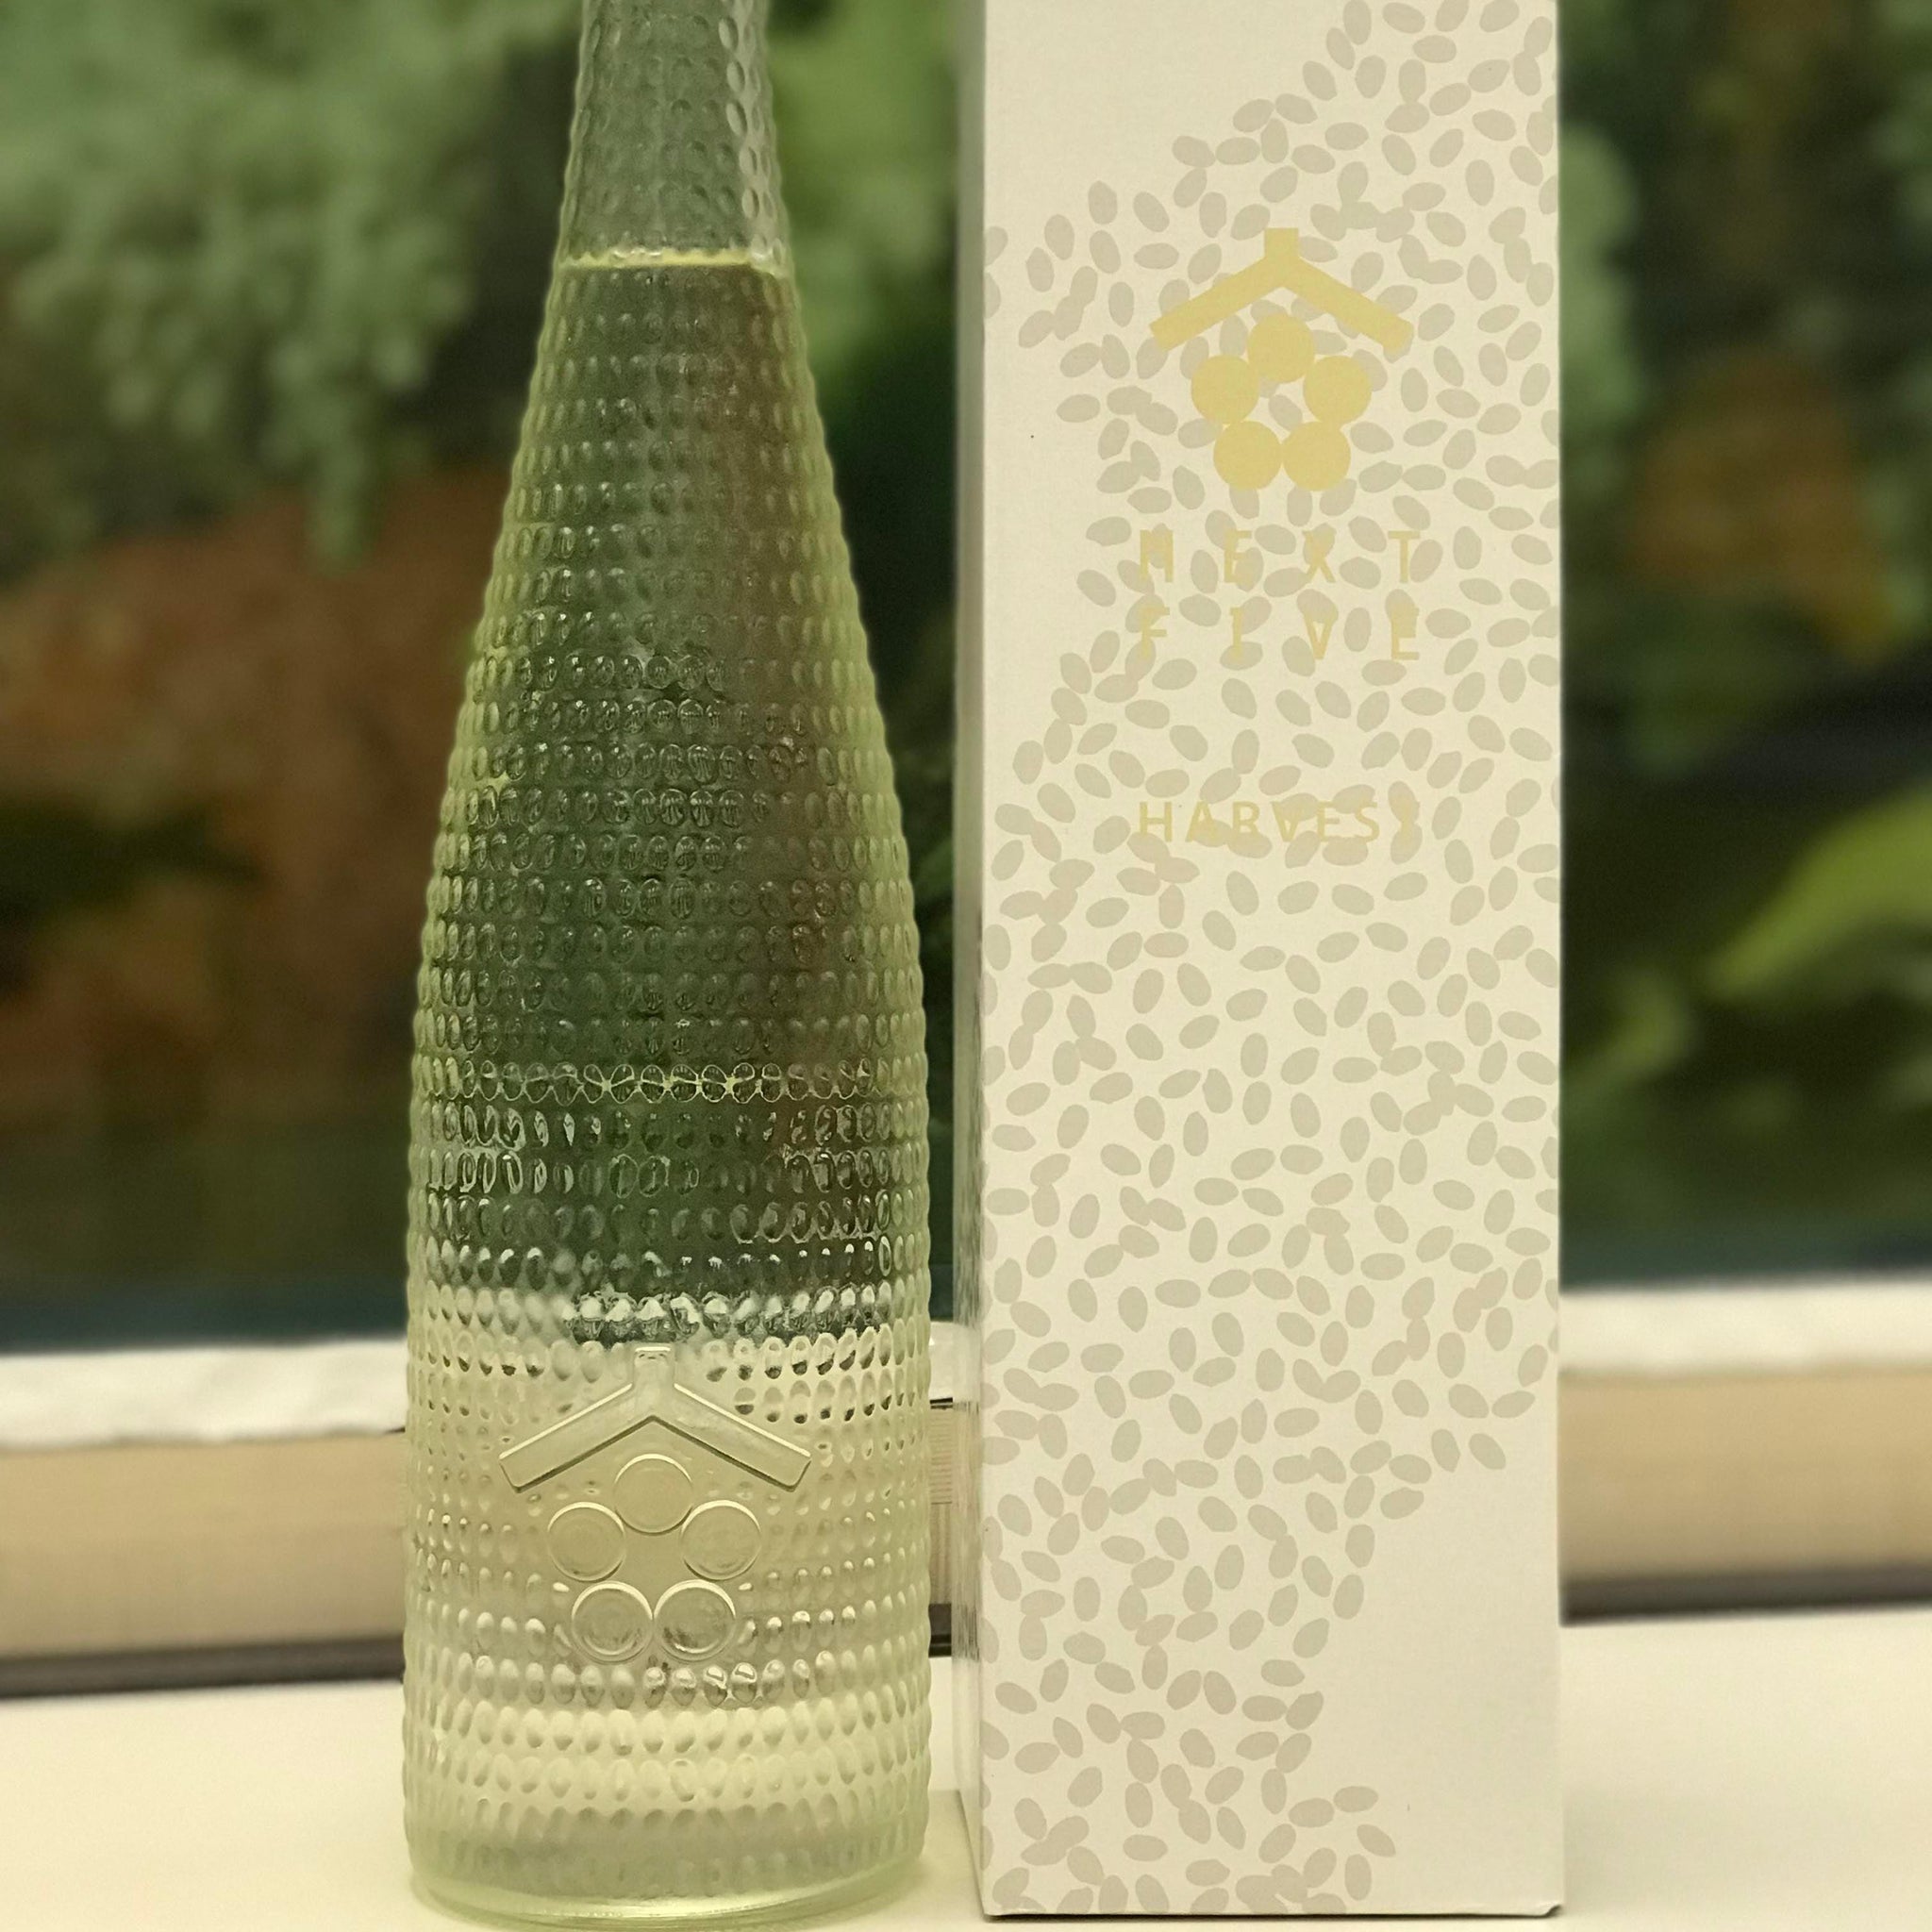 日本清酒 - NEXT5 x 田根剛氏 2017 limited version Sake (全球限量5000支) 720ml - Chillax.hk